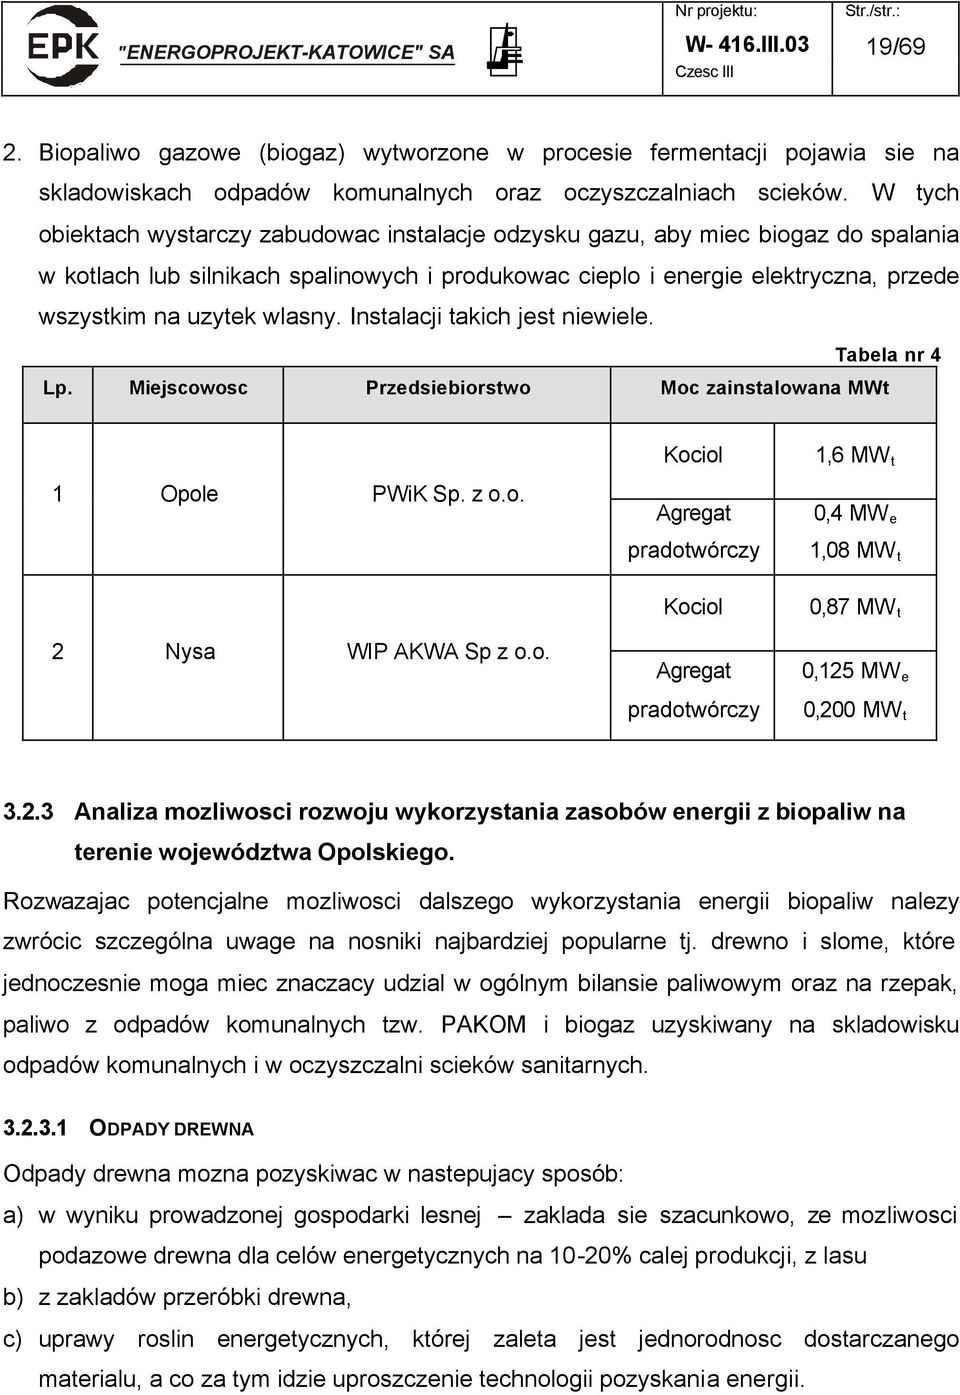 wlasny. Instalacji takich jest niewiele. Tabela nr 4 Lp. Miejscowosc Przedsiebiorstwo Moc zainstalowana MWt 1 Opole PWiK Sp. z o.o. 2 Nysa WIP AKWA Sp z o.o. Kociol Agregat pradotwórczy Kociol Agregat pradotwórczy 1,6 MW t 0,4 MW e 1,08 MW t 0,87 MW t 0,125 MW e 0,200 MW t 3.